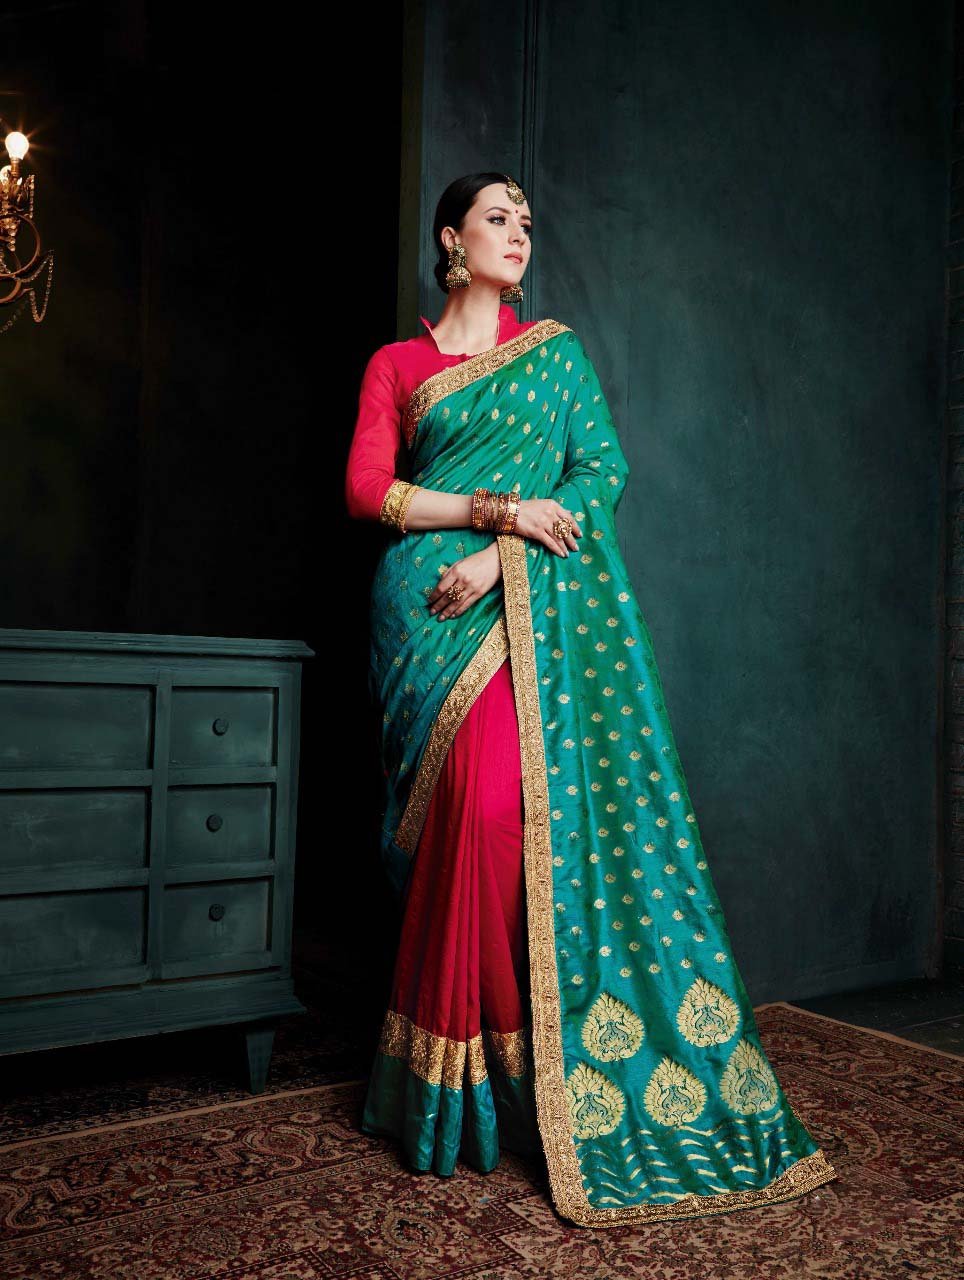 Carribean Sunset Banarasi Silk Saree-Design BNS023 turquoise and red coloured heavy silk saree